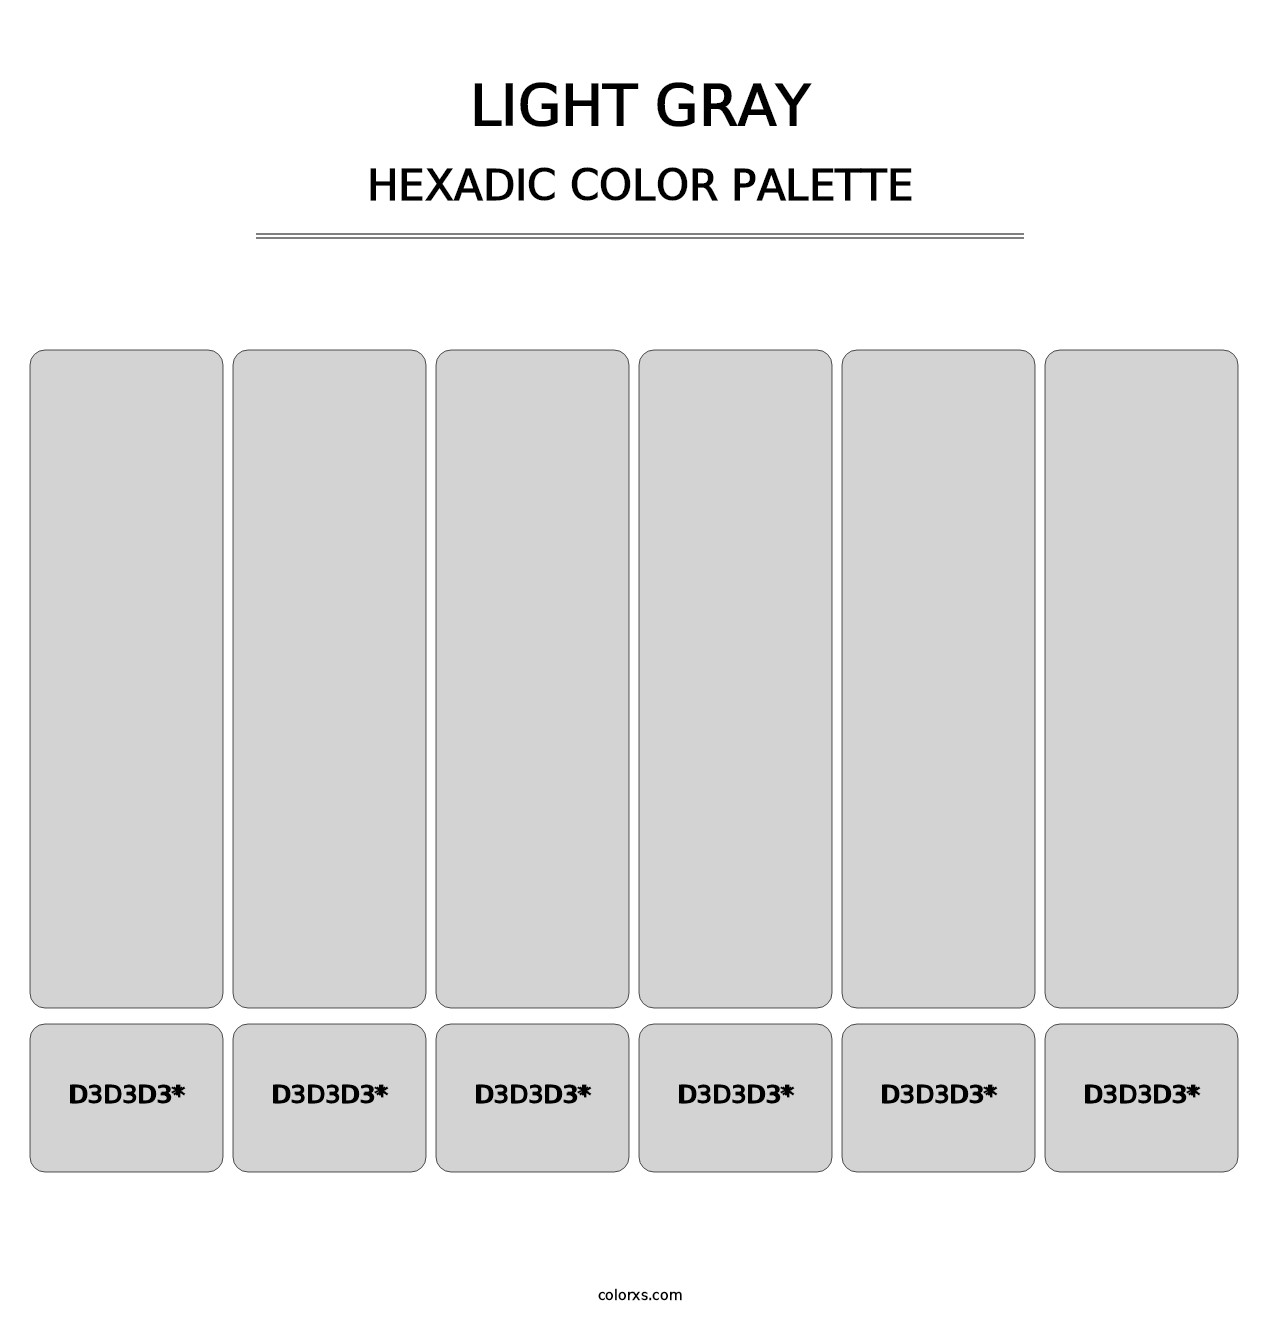 Light Gray - Hexadic Color Palette